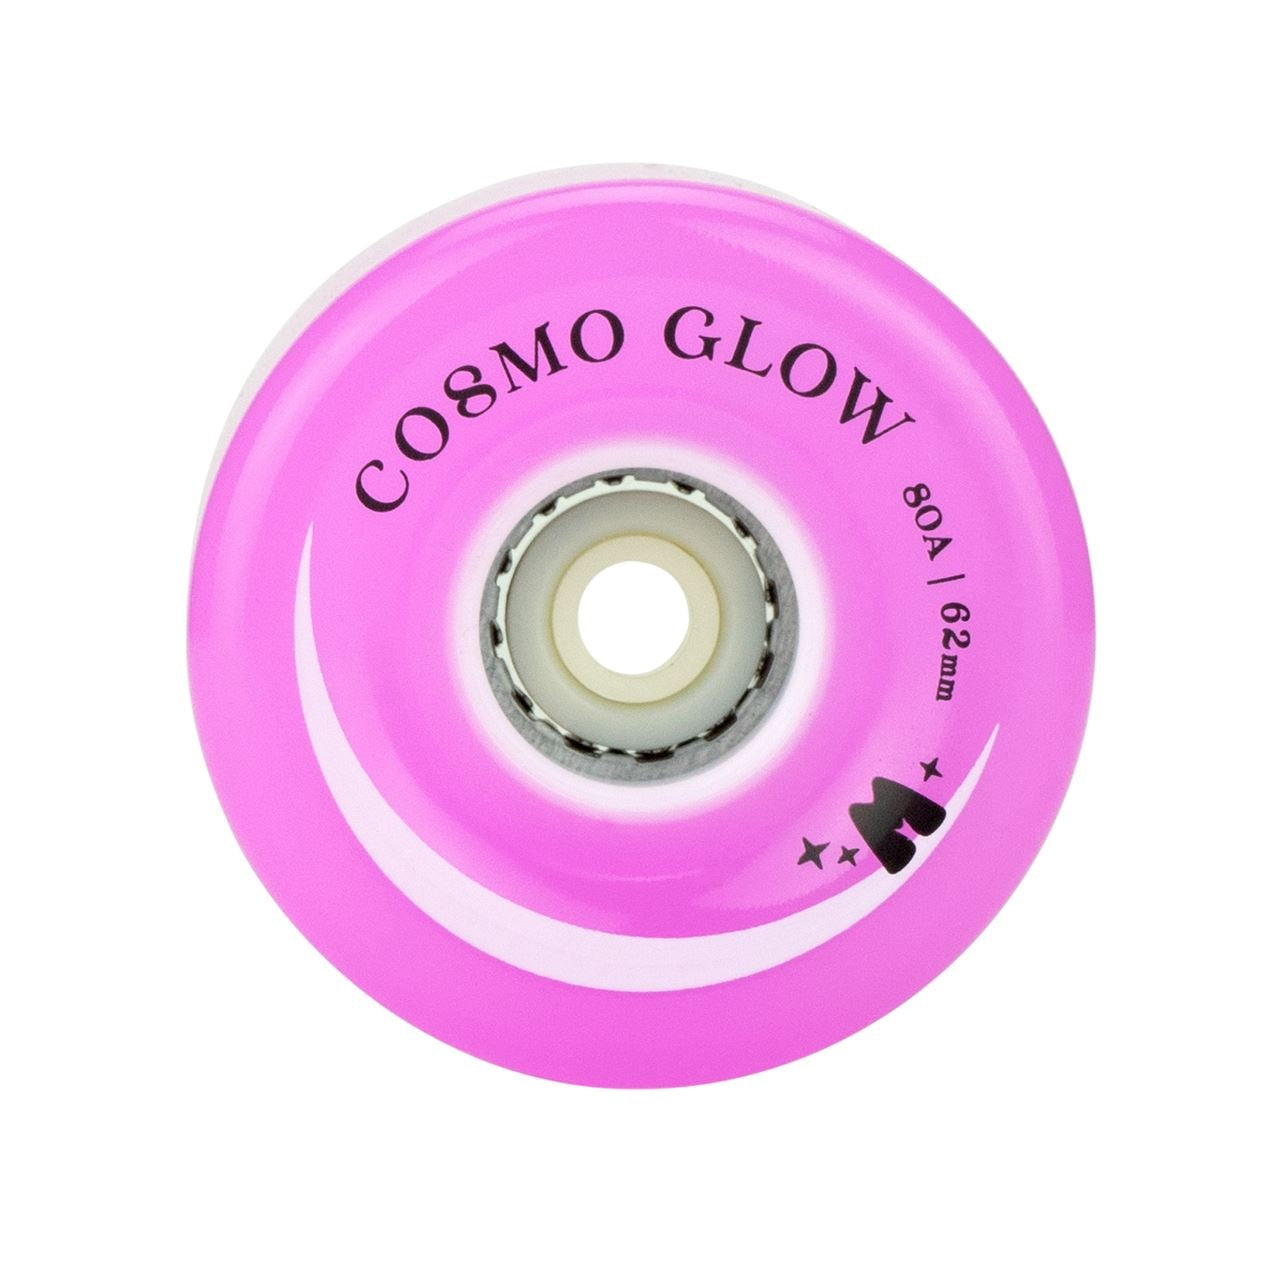 Moxi Cosmo Glow - Ruedas para patines con luz LED, color morado Haze, 2.441 in, 80 A, paquete de 4